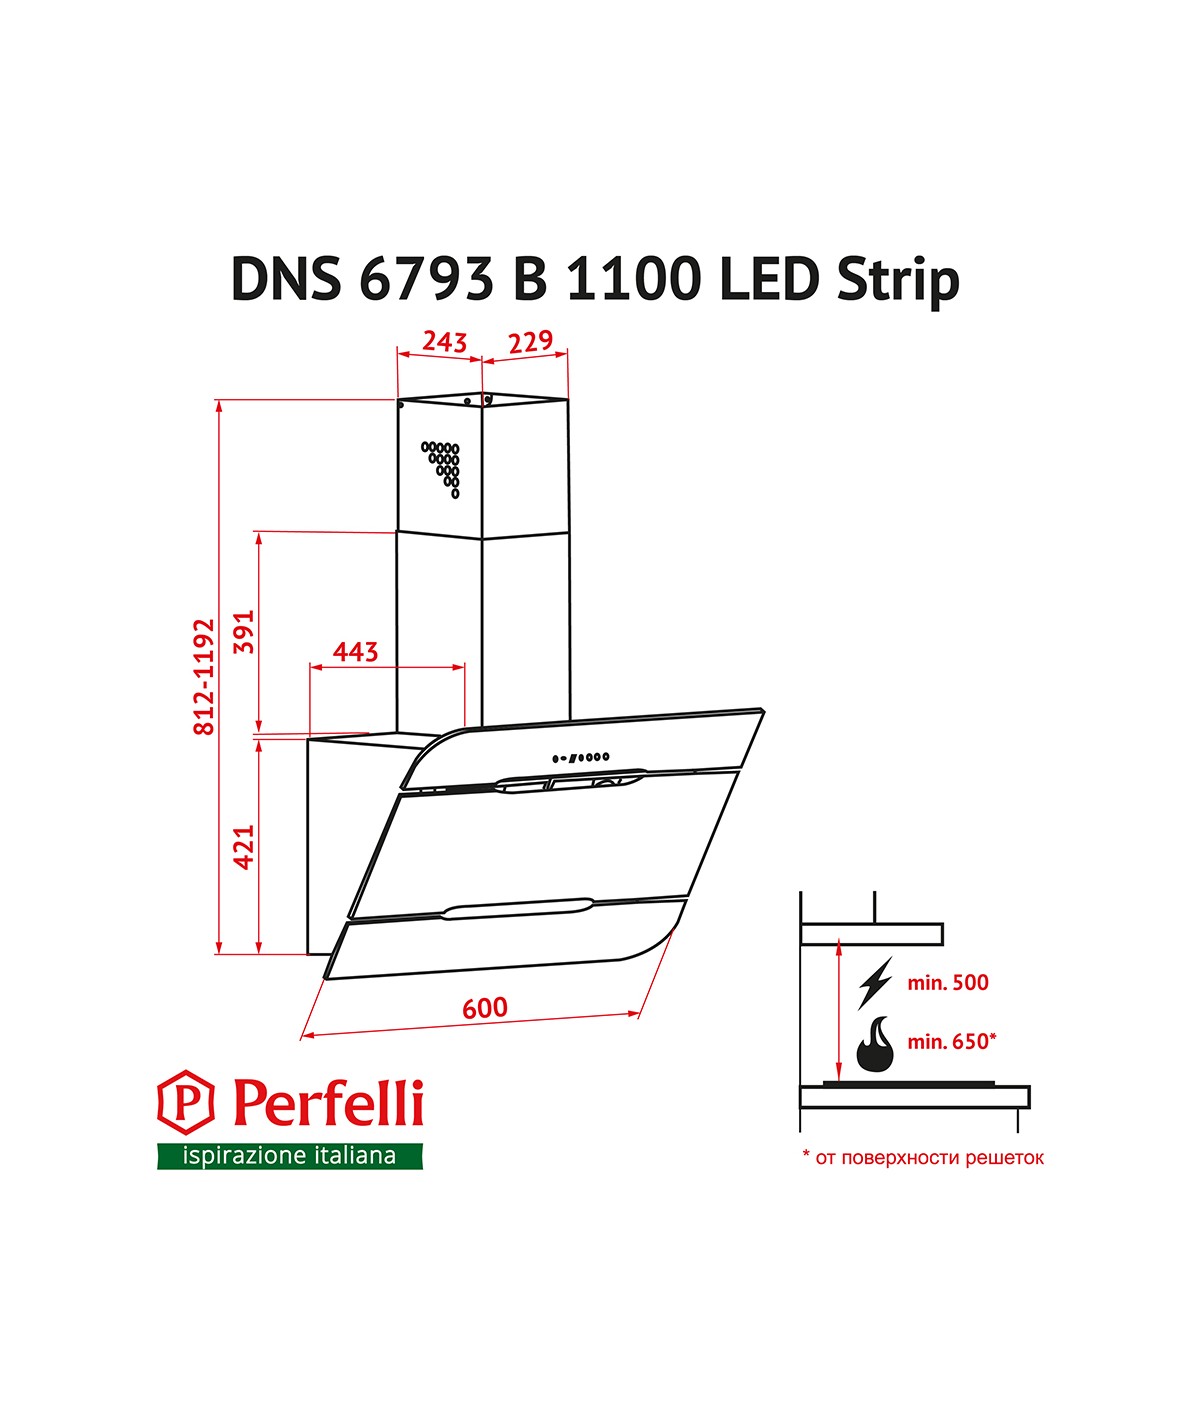 Perfelli DNS 6793 B 1100 BL LED Strip Габаритные размеры